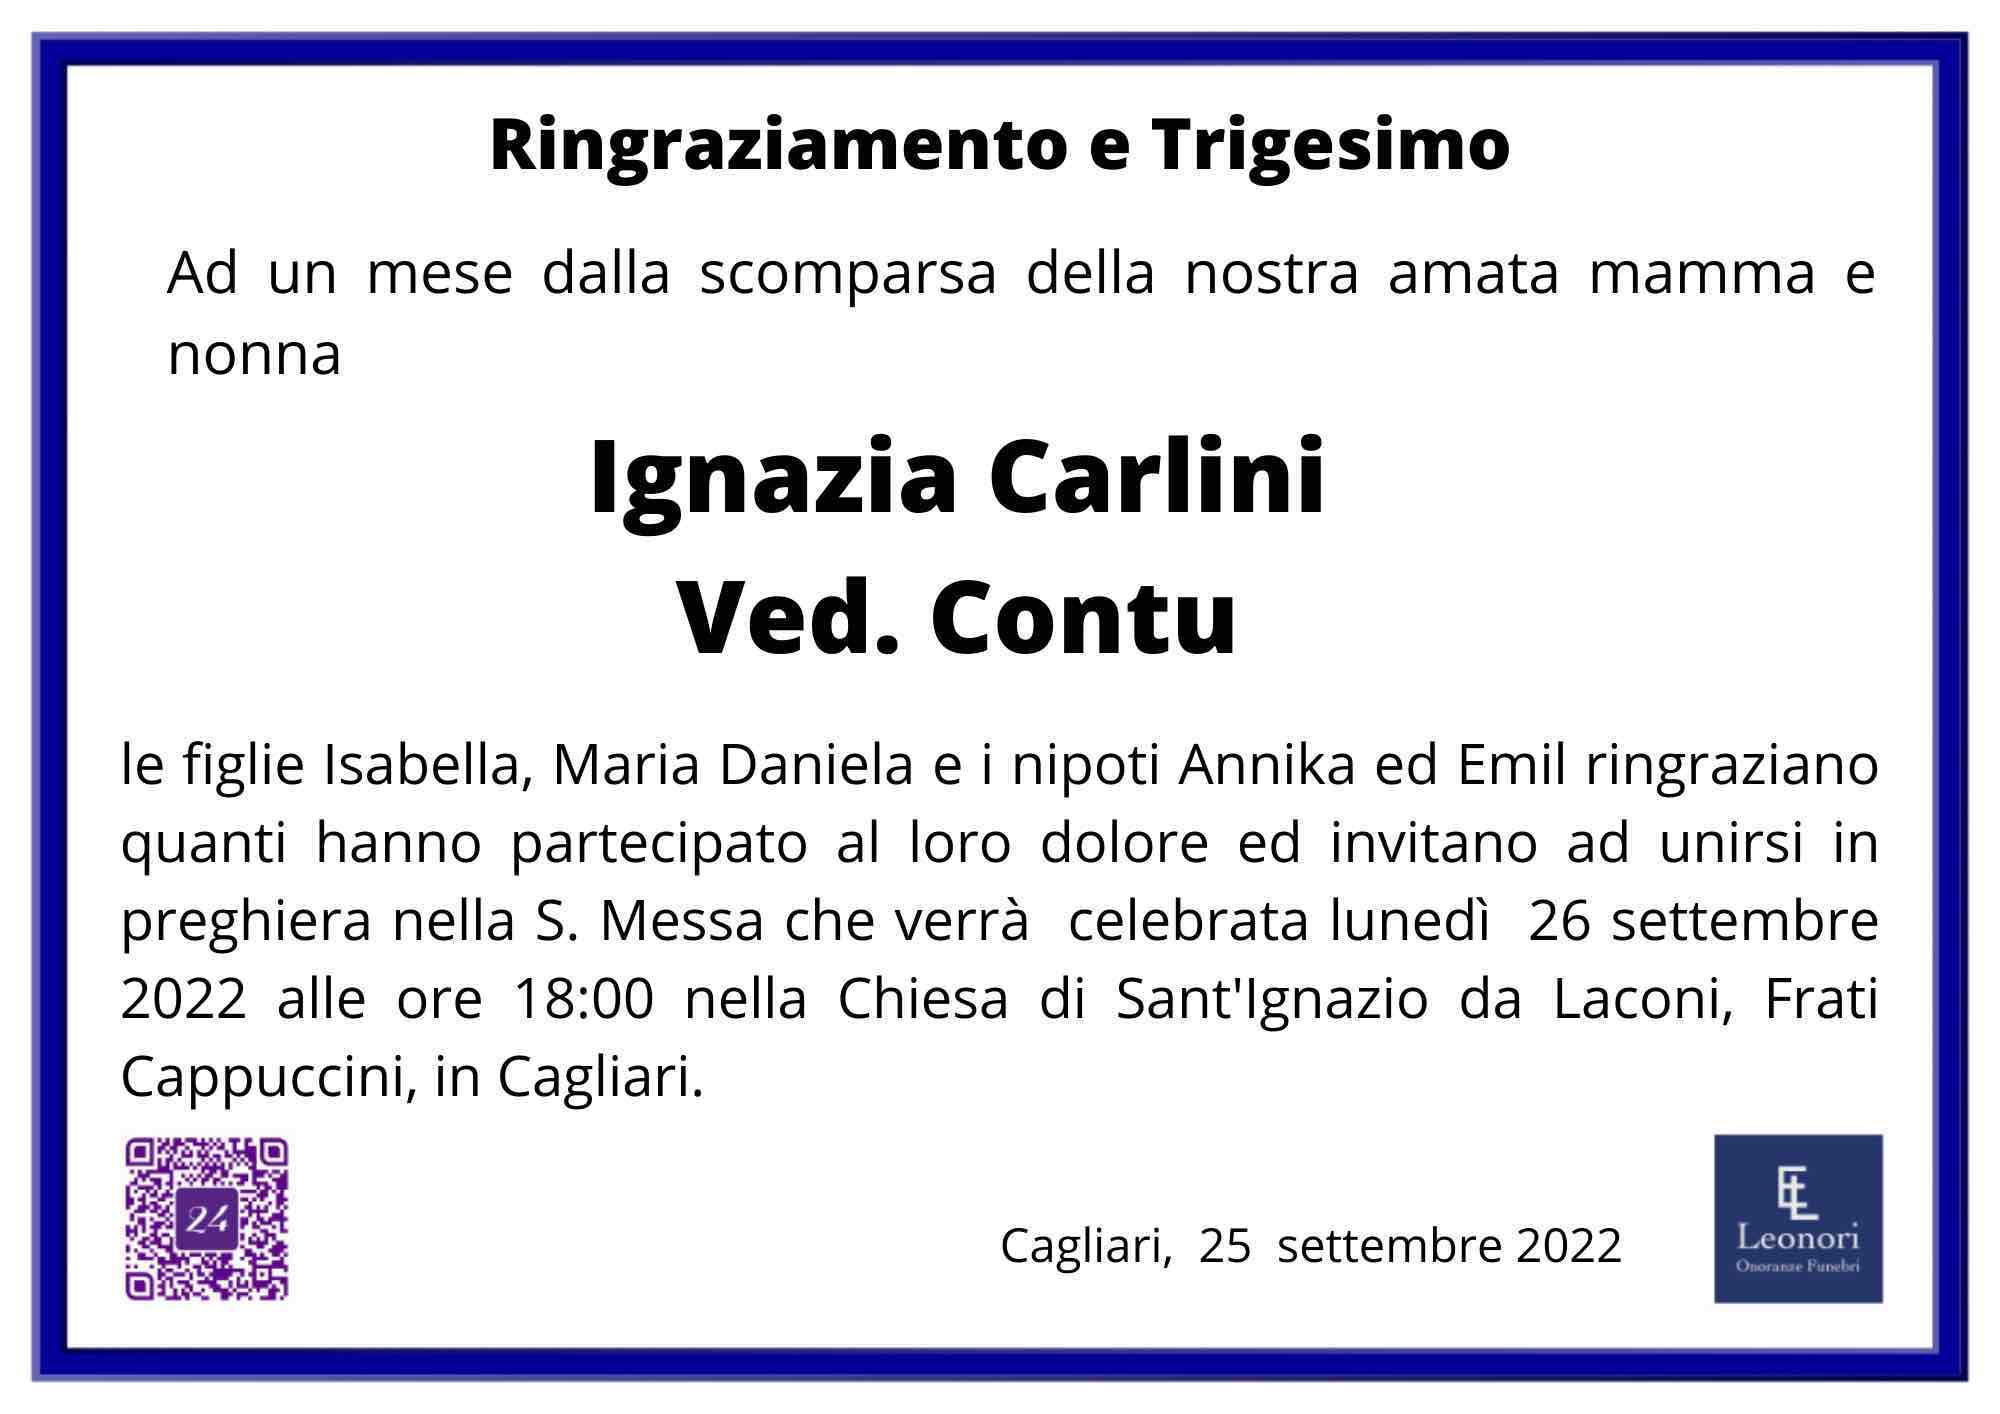 Ignazia Carlini